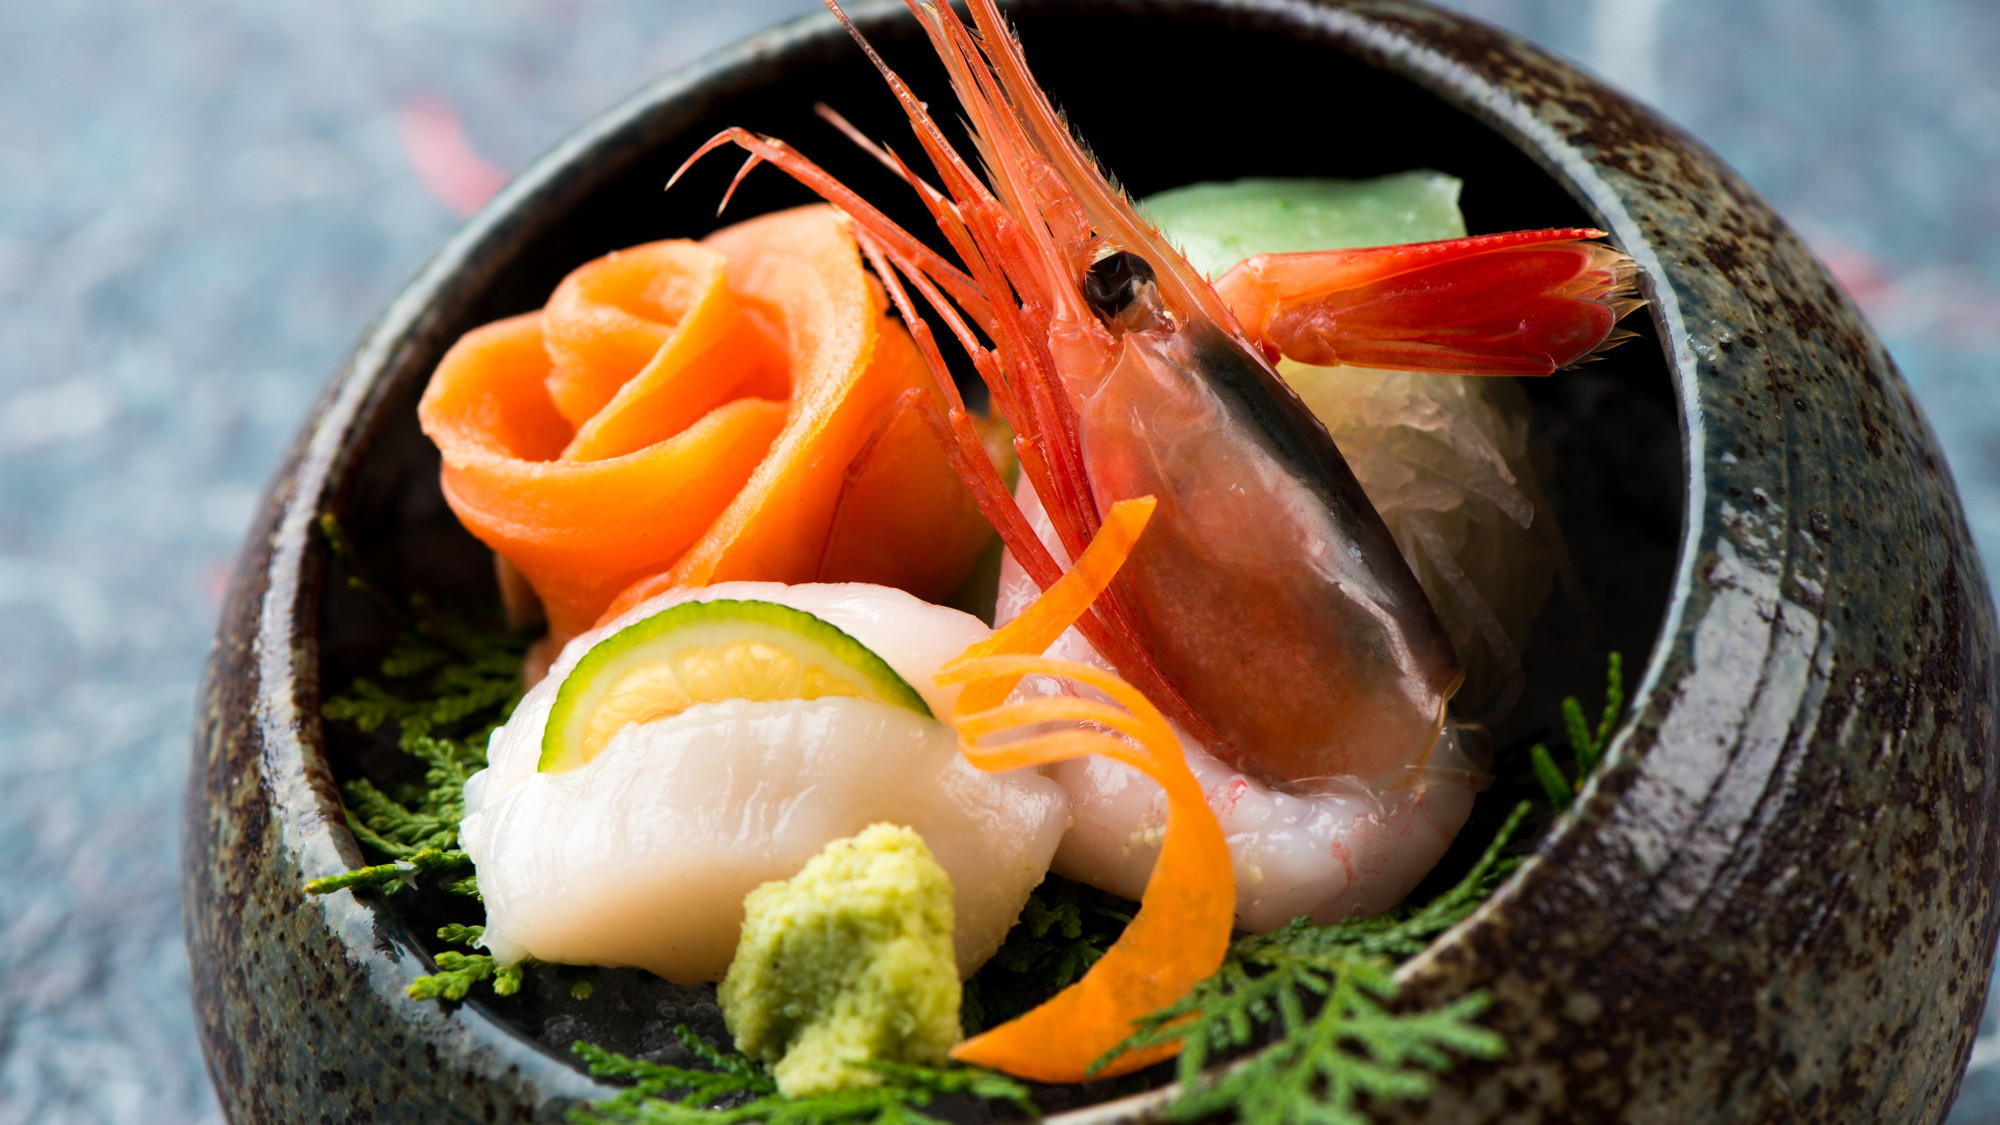 【和食膳・お造り例】紅トロや庄内港で取れたお刺身を中心に新鮮な味わいをご提供致します